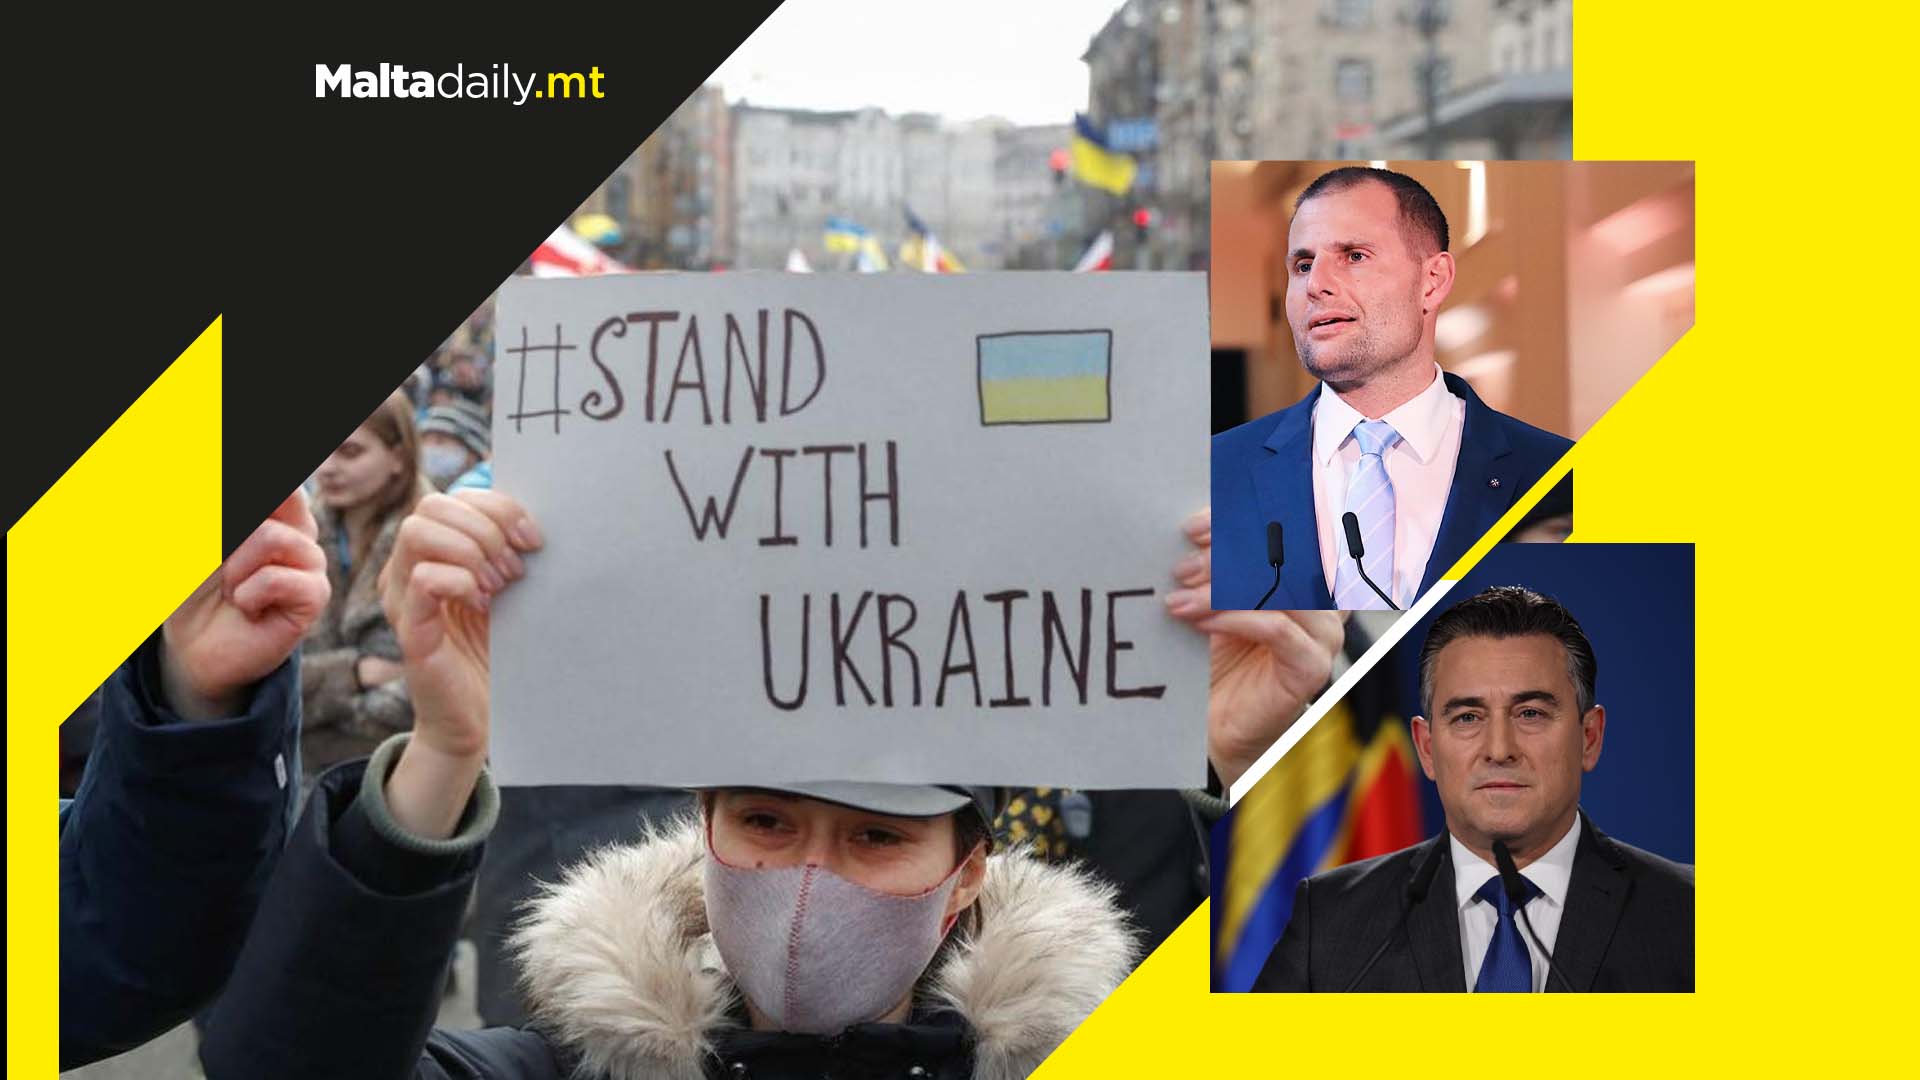 Robert Abela and Bernard Grech react to Ukrainian crisis